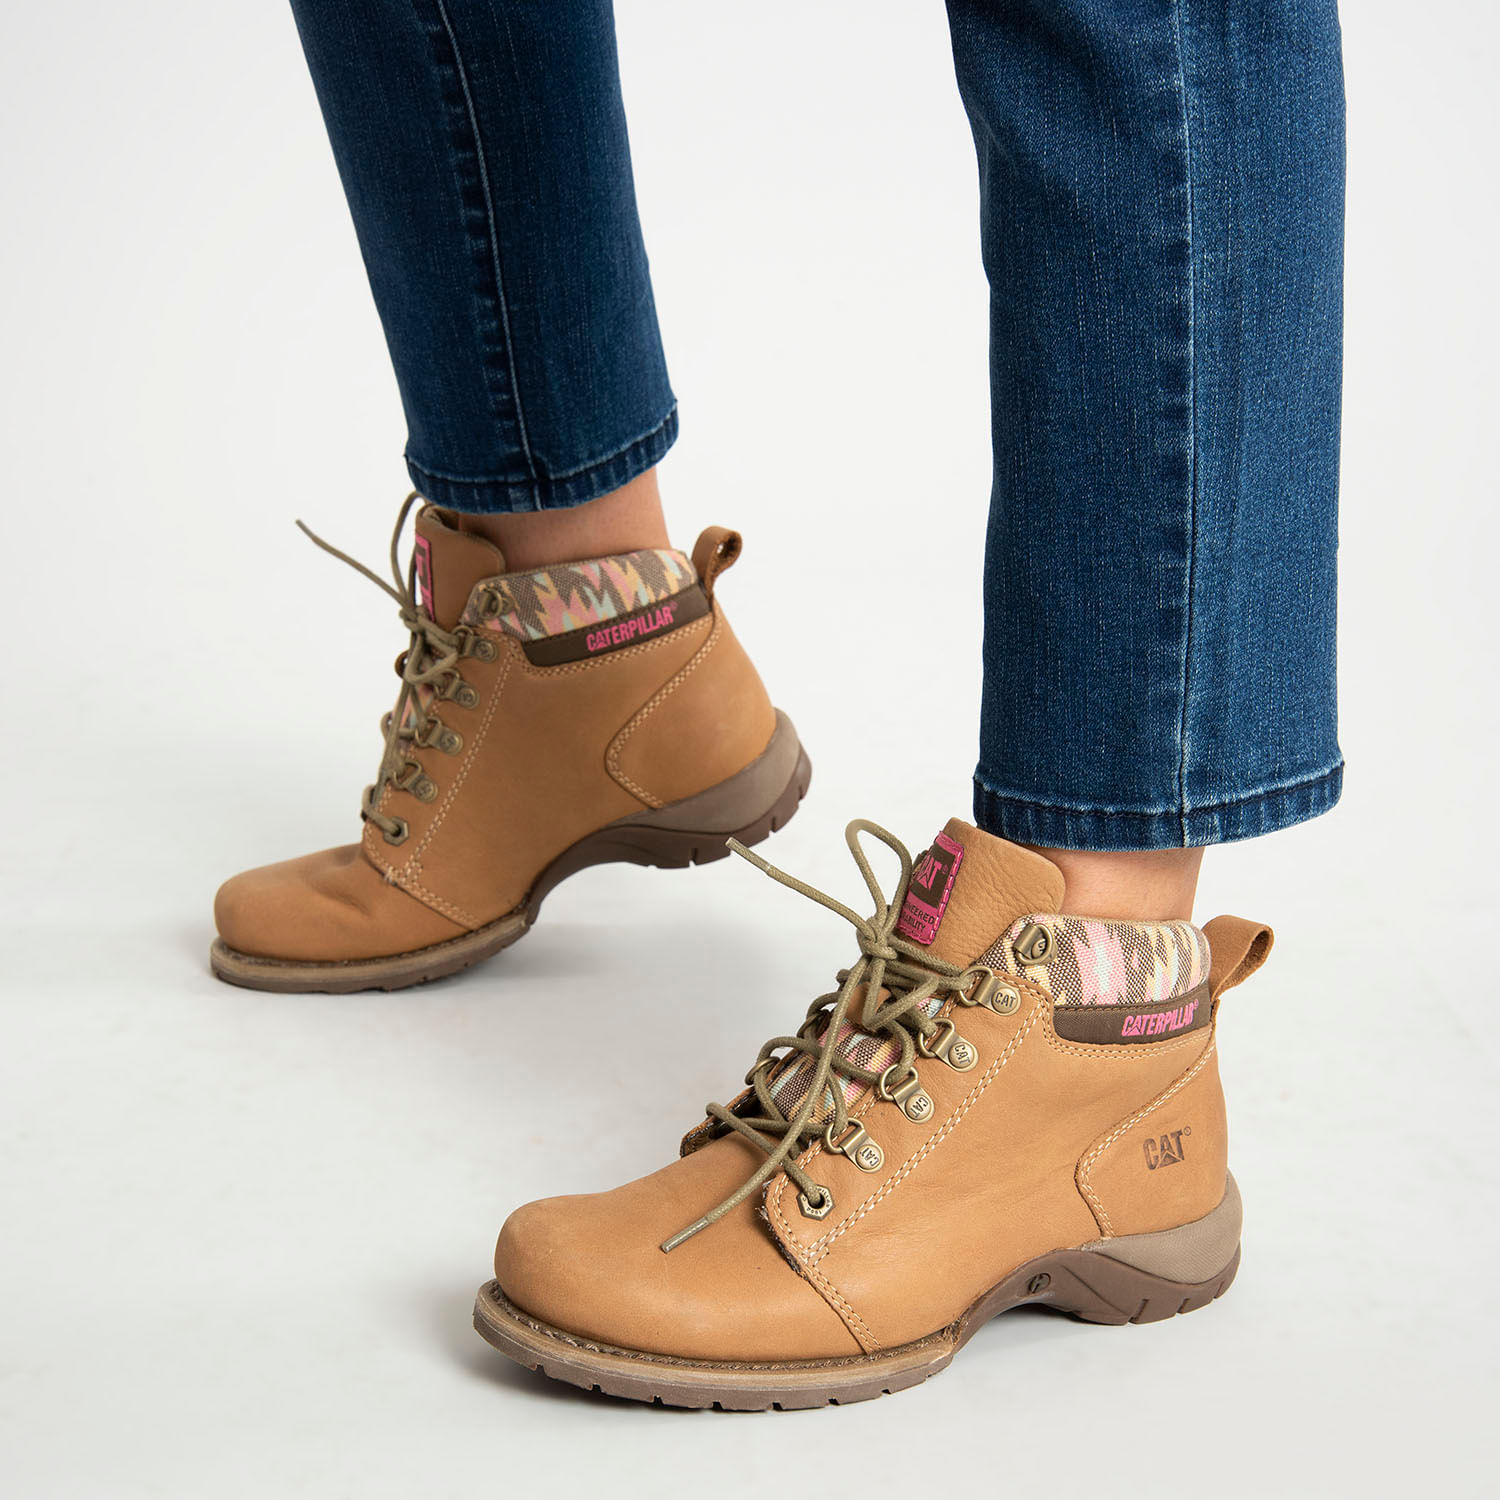 Mujer - Zapatos.cl | Sitio Oficial - Encuentra Vestuario, Calzado y más